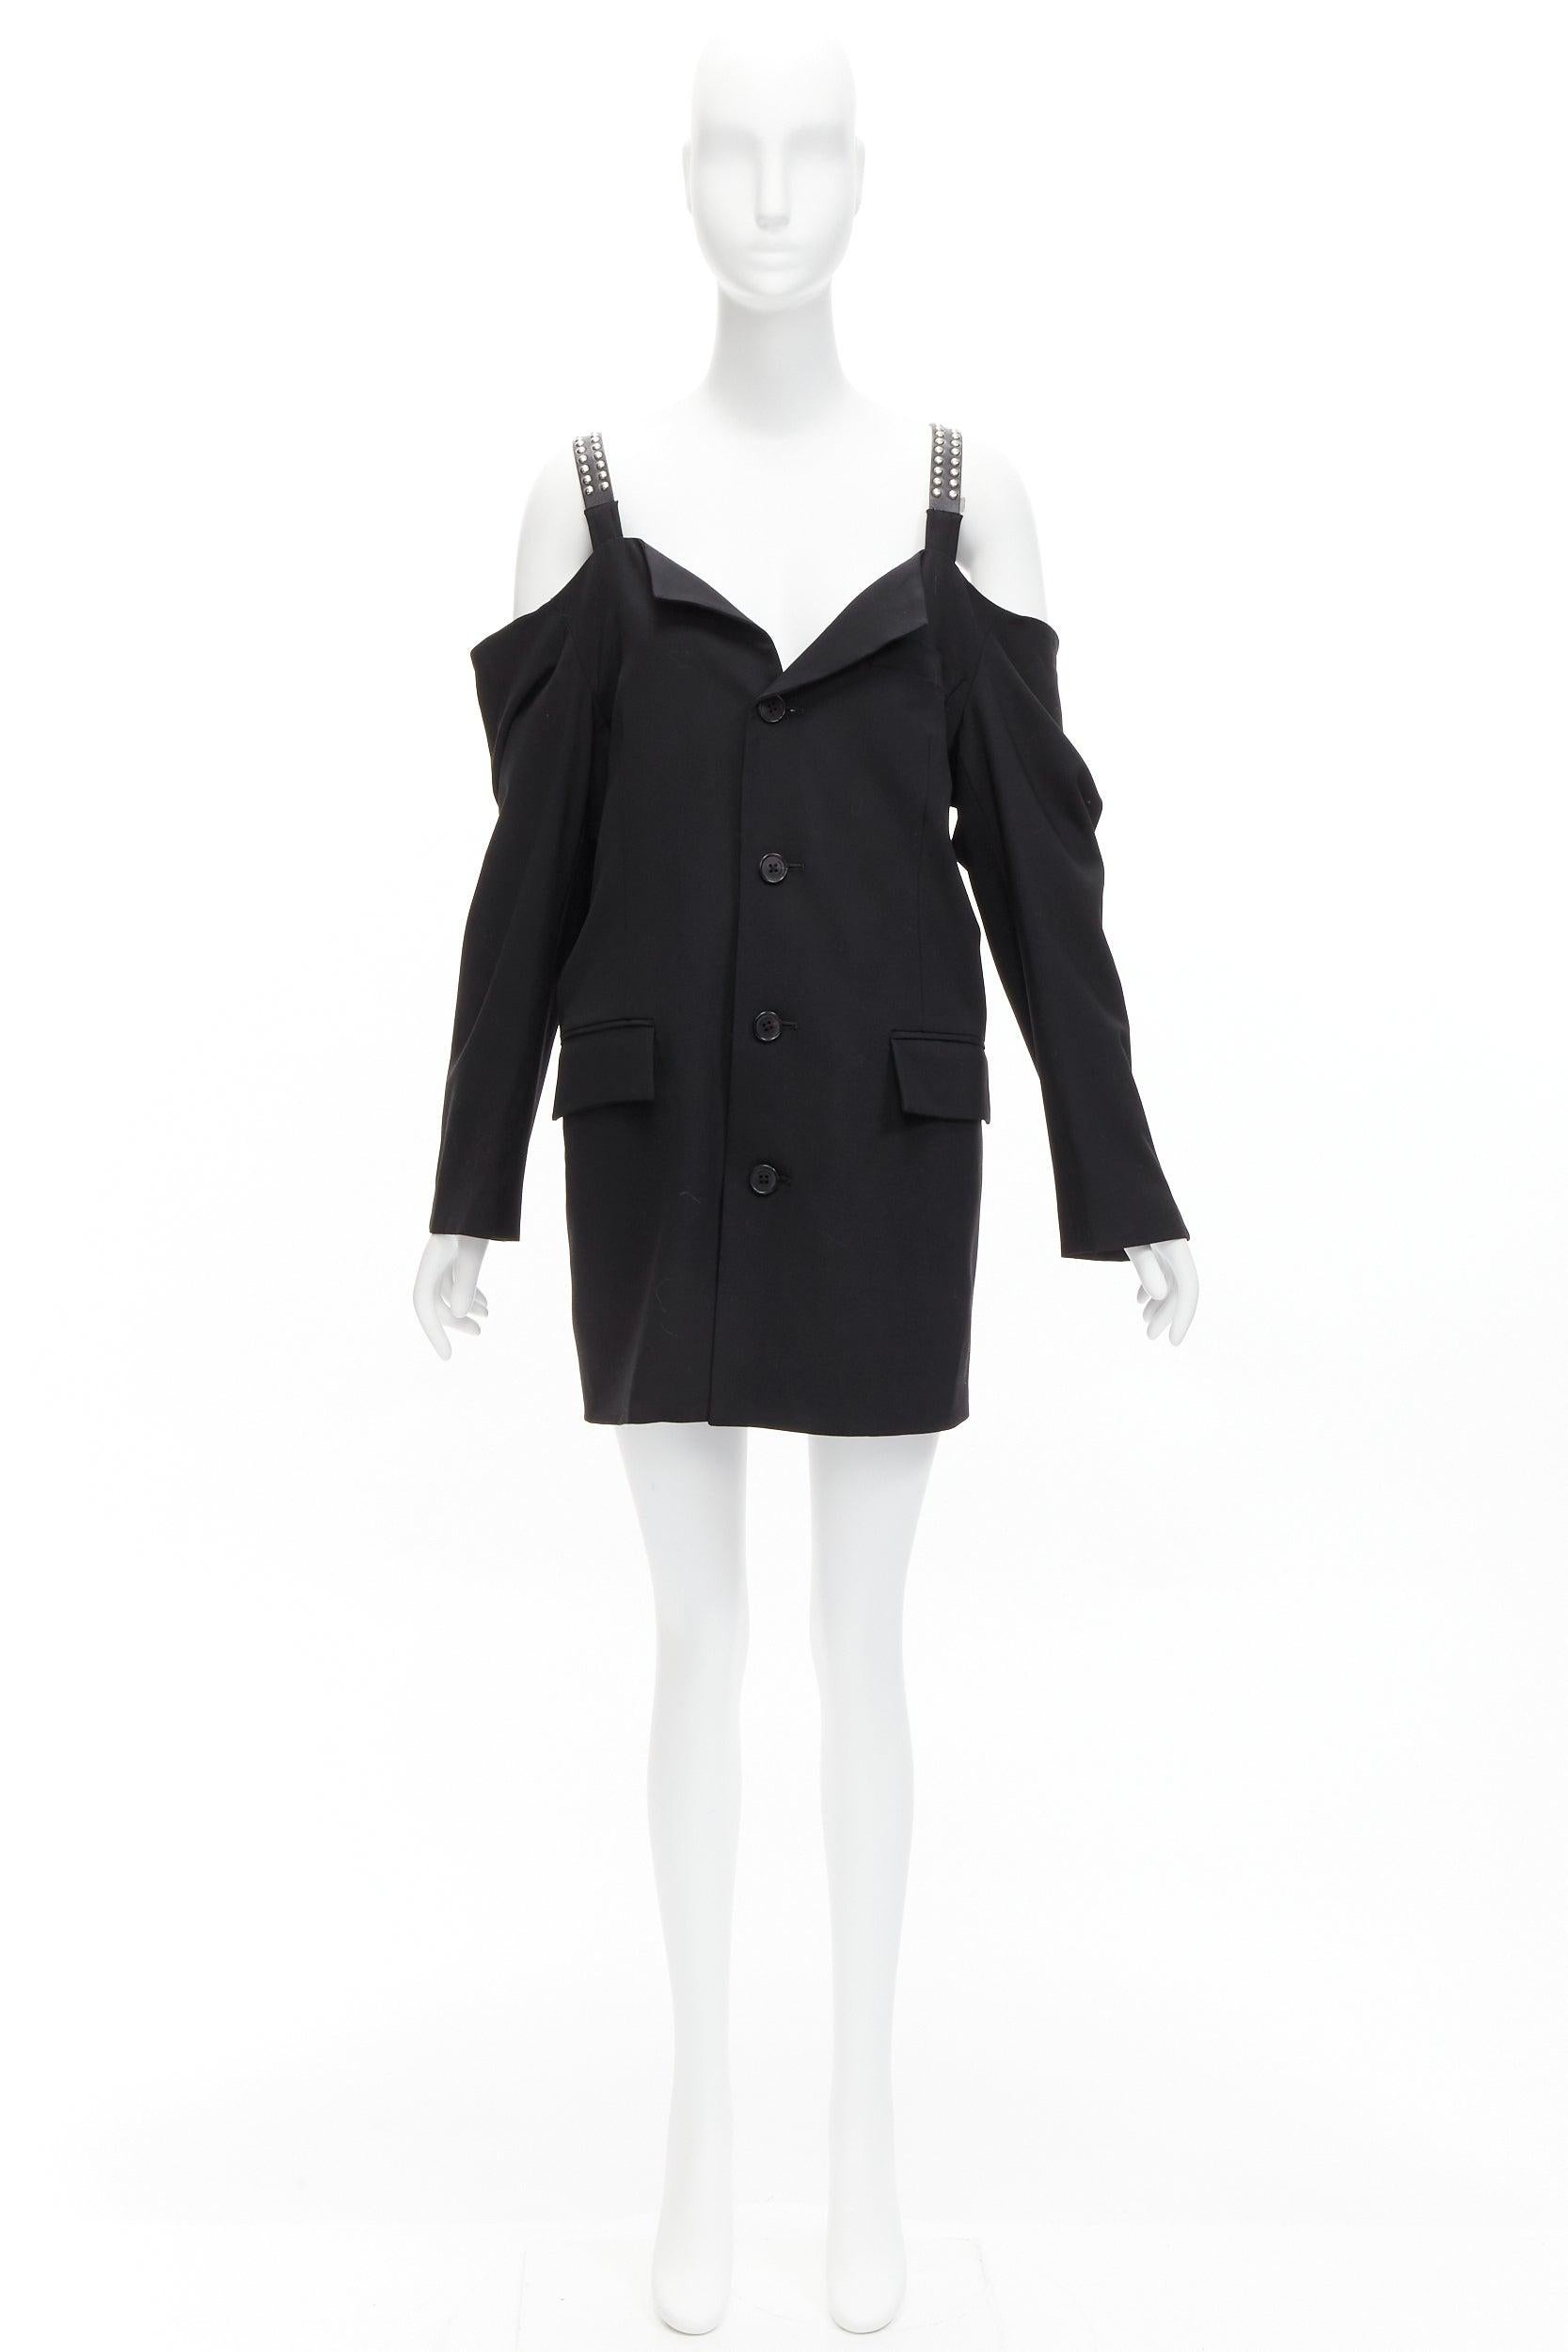 AMBUSH wool studded leather straps cold shoulder deconstructed blazer dress JP1 For Sale 4